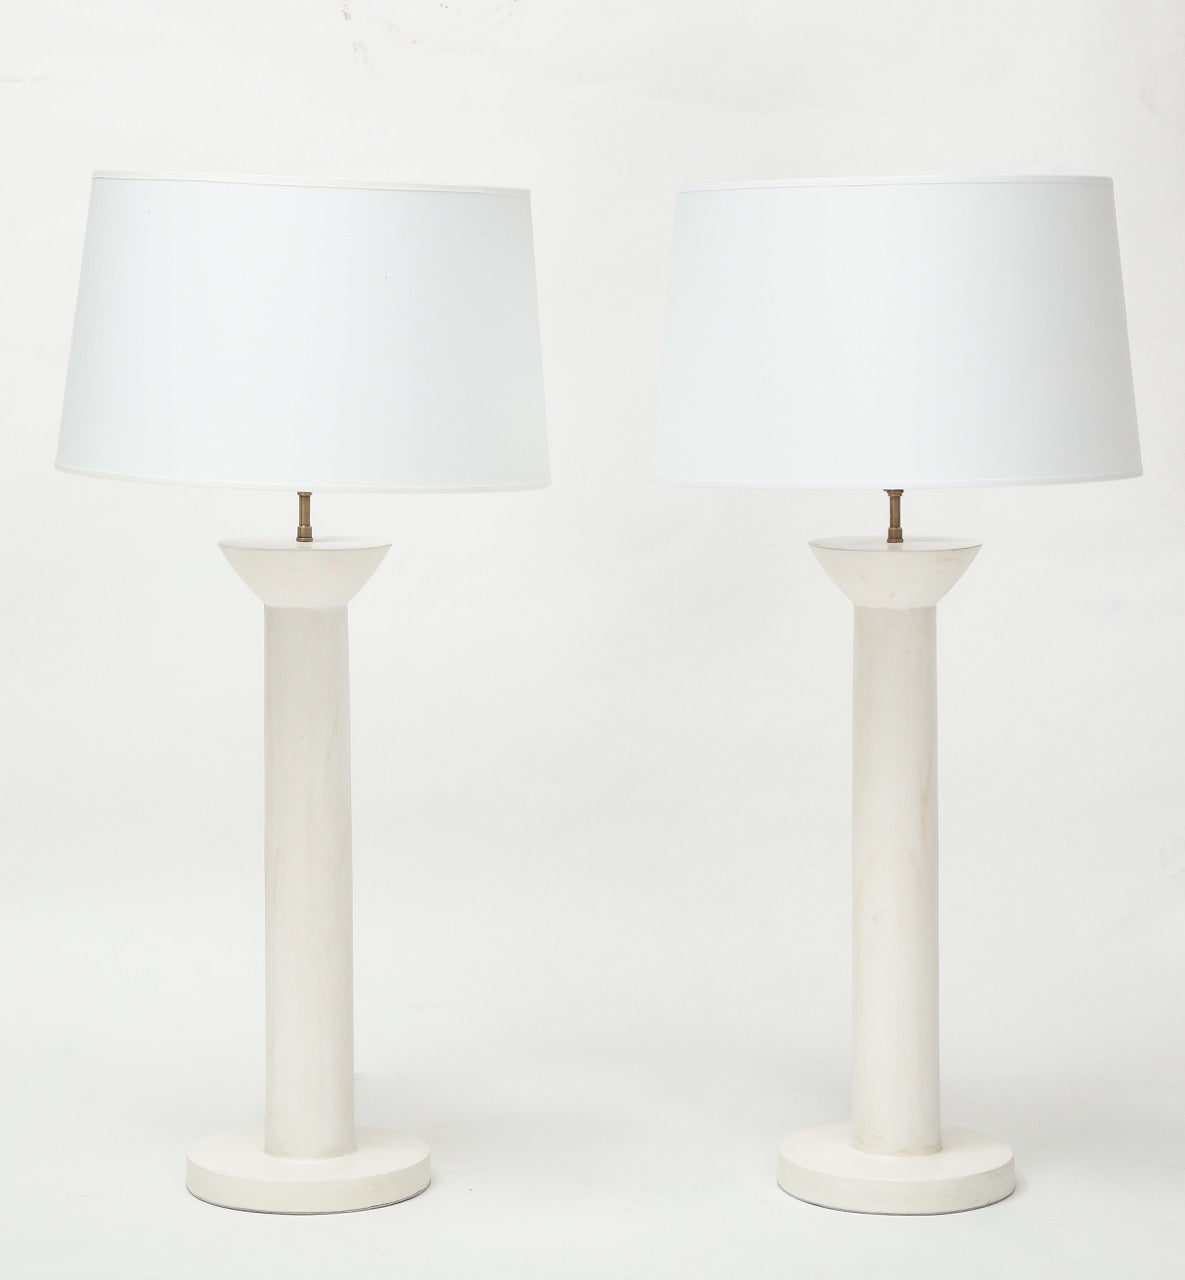 Pair of "Colonne" Plaster Lamps by Facto Atelier Paris, France 2021